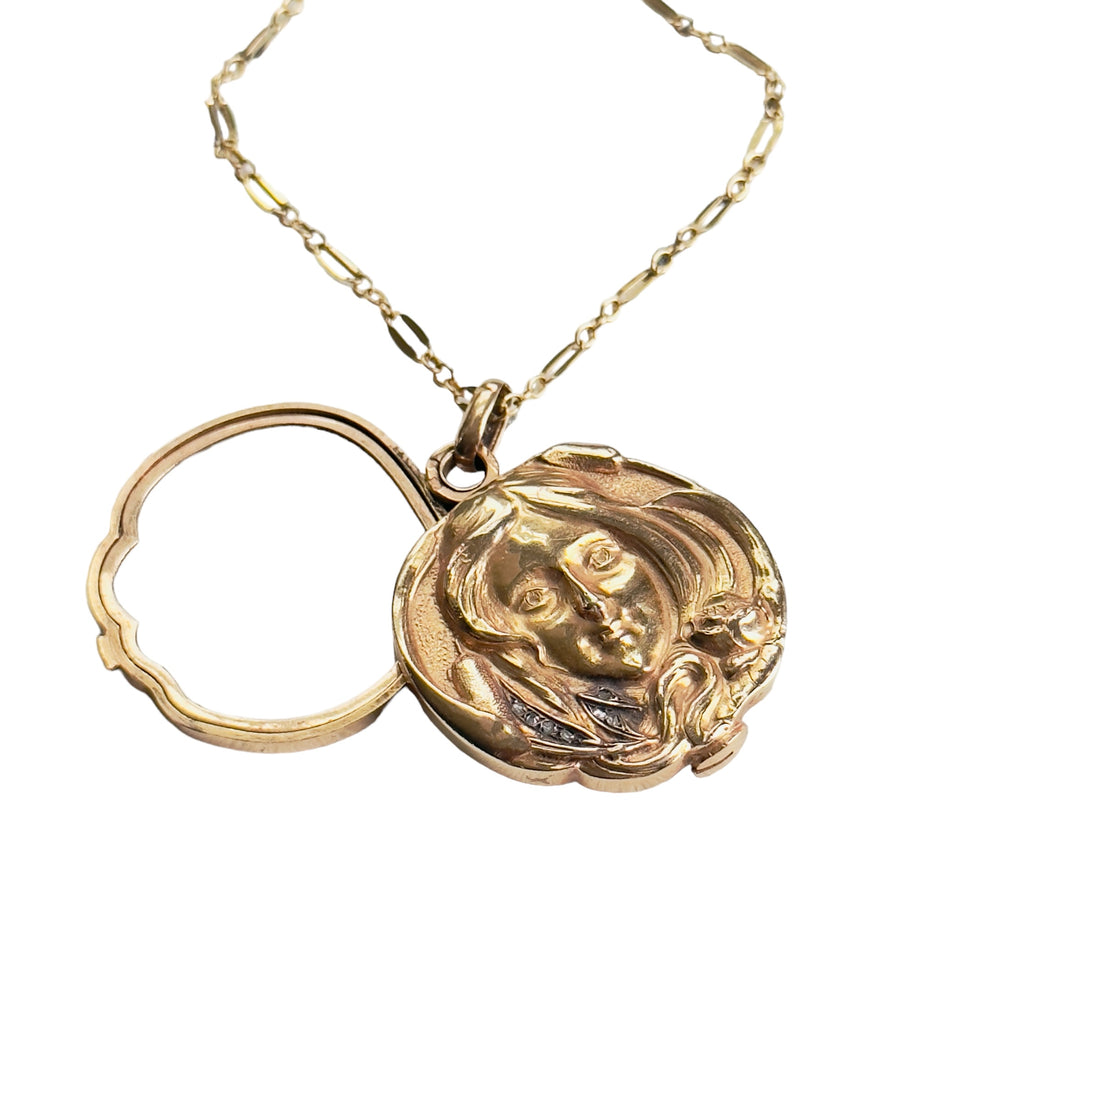 Antique Art Nouveau photo locket in 18k gold, showcasing a raised female portrait and diamonds"